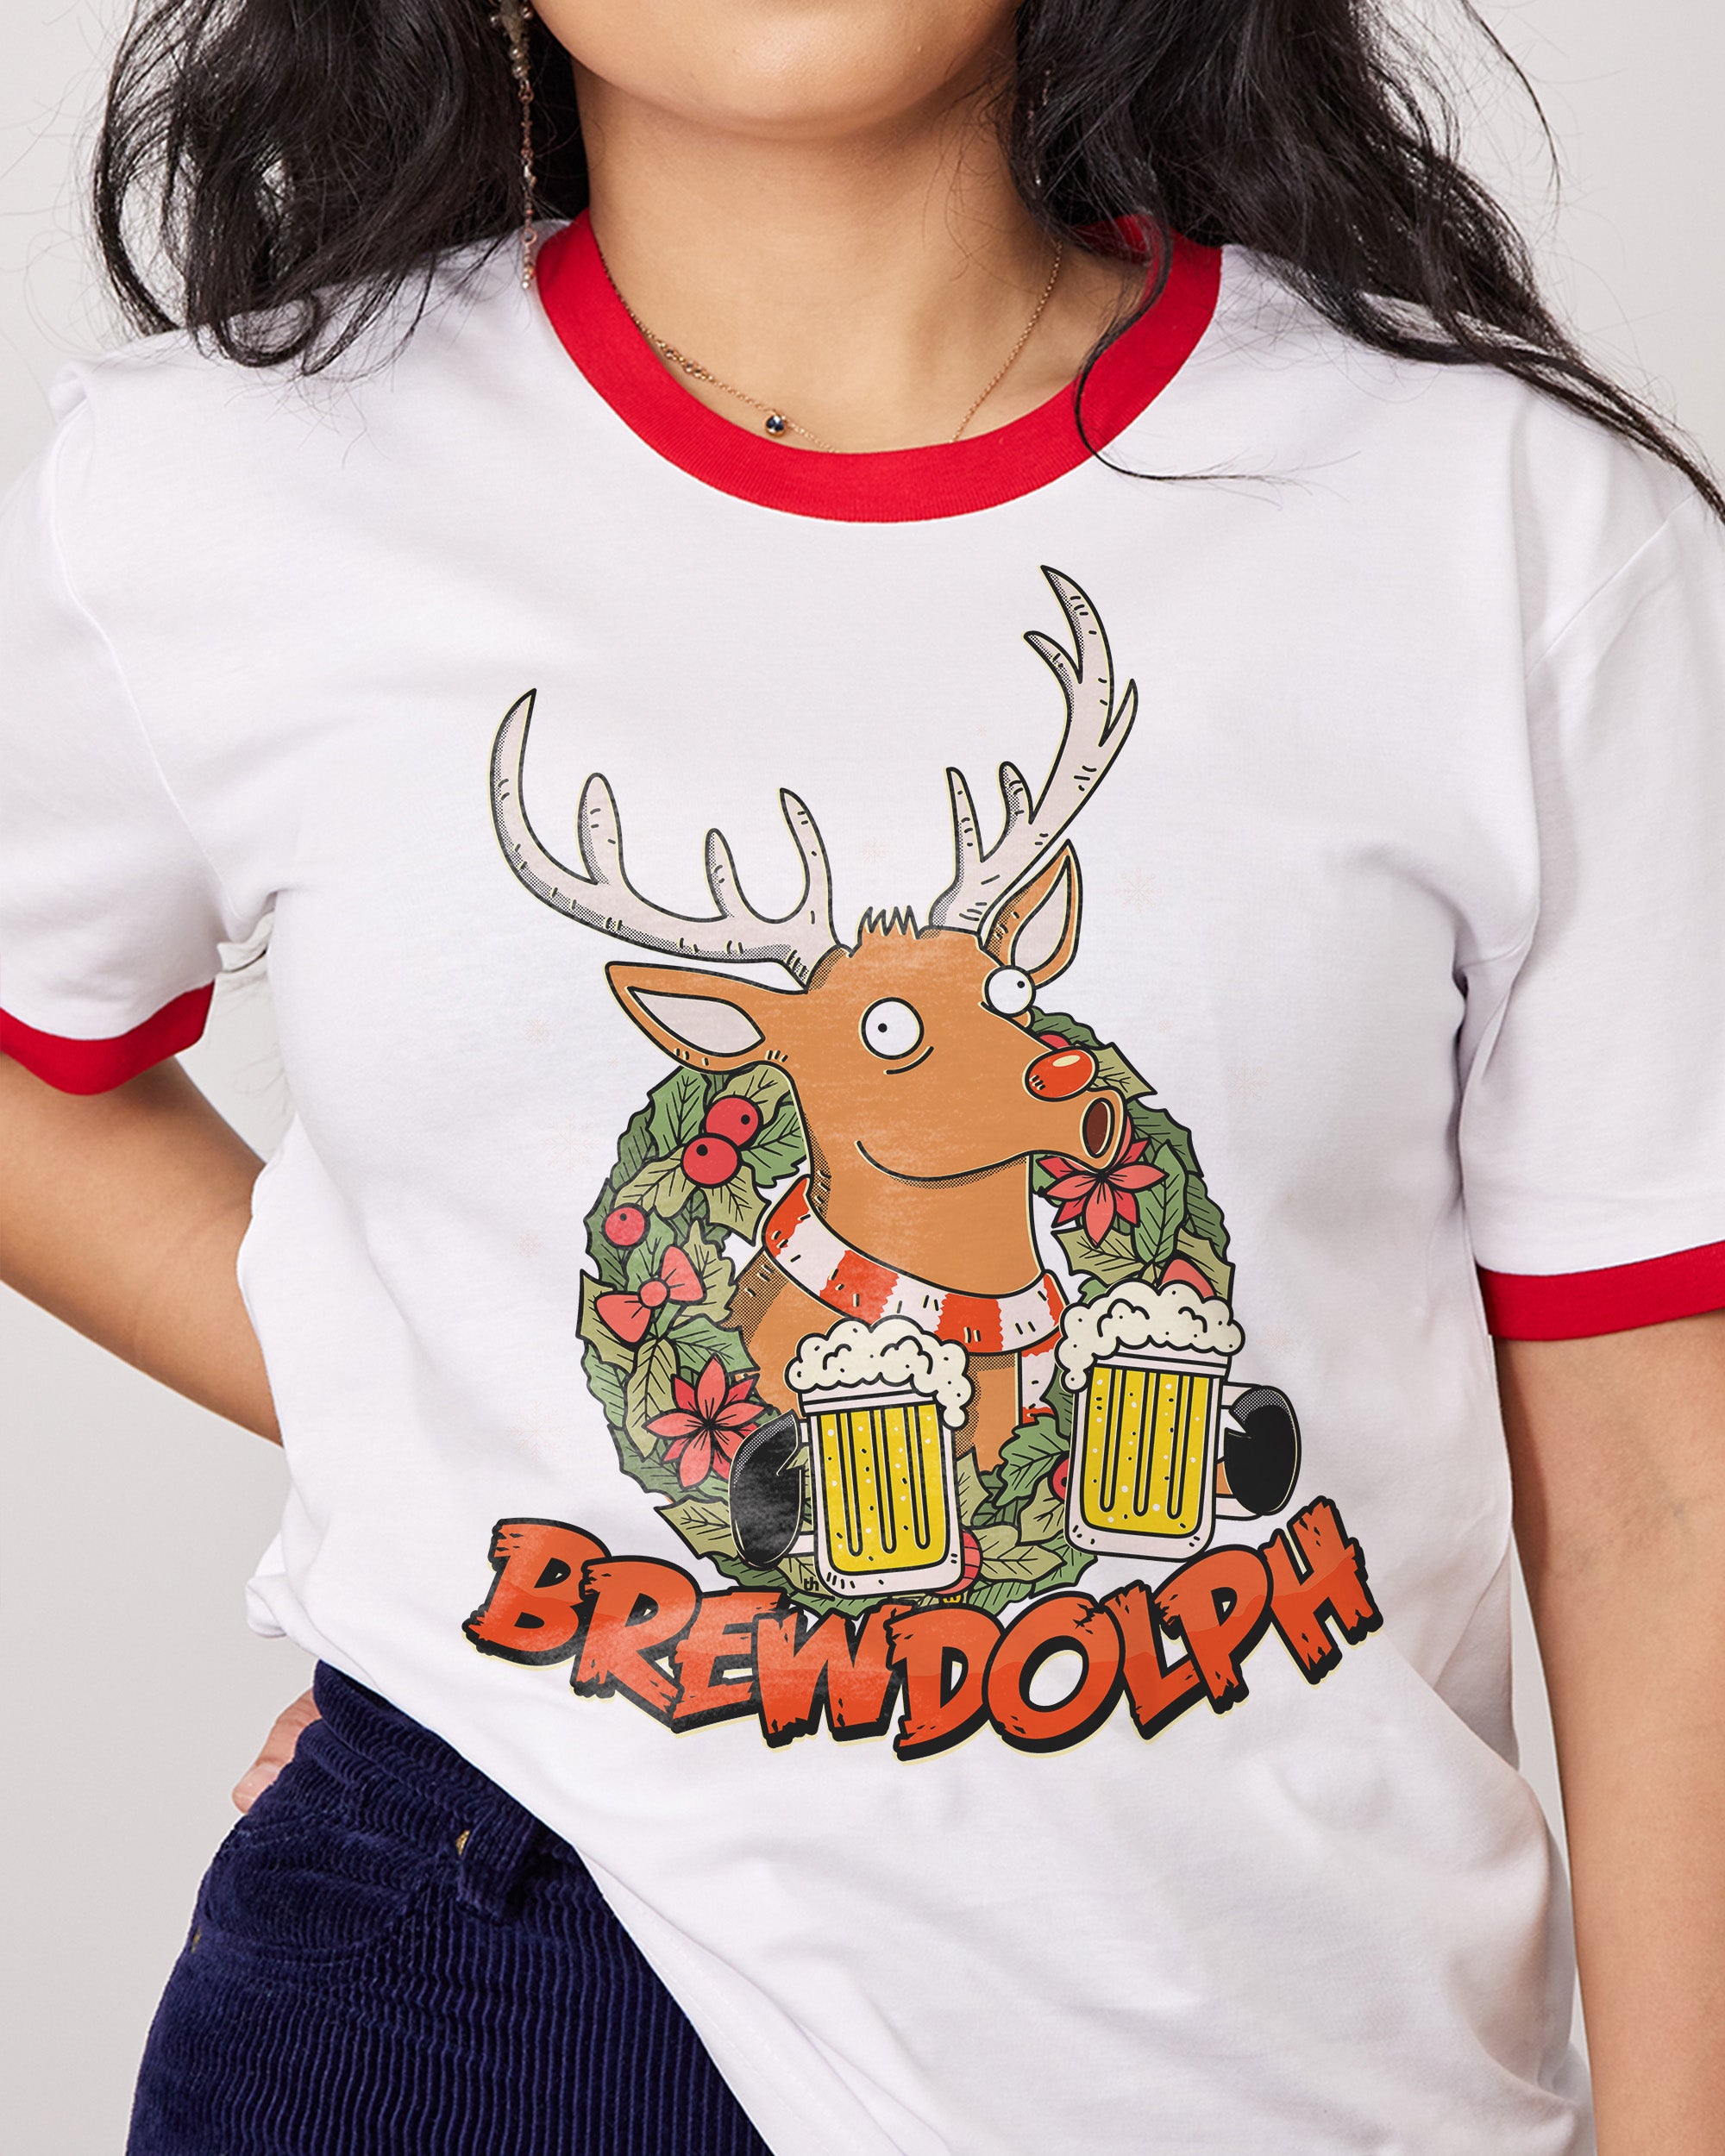 Brewdolph T-Shirt